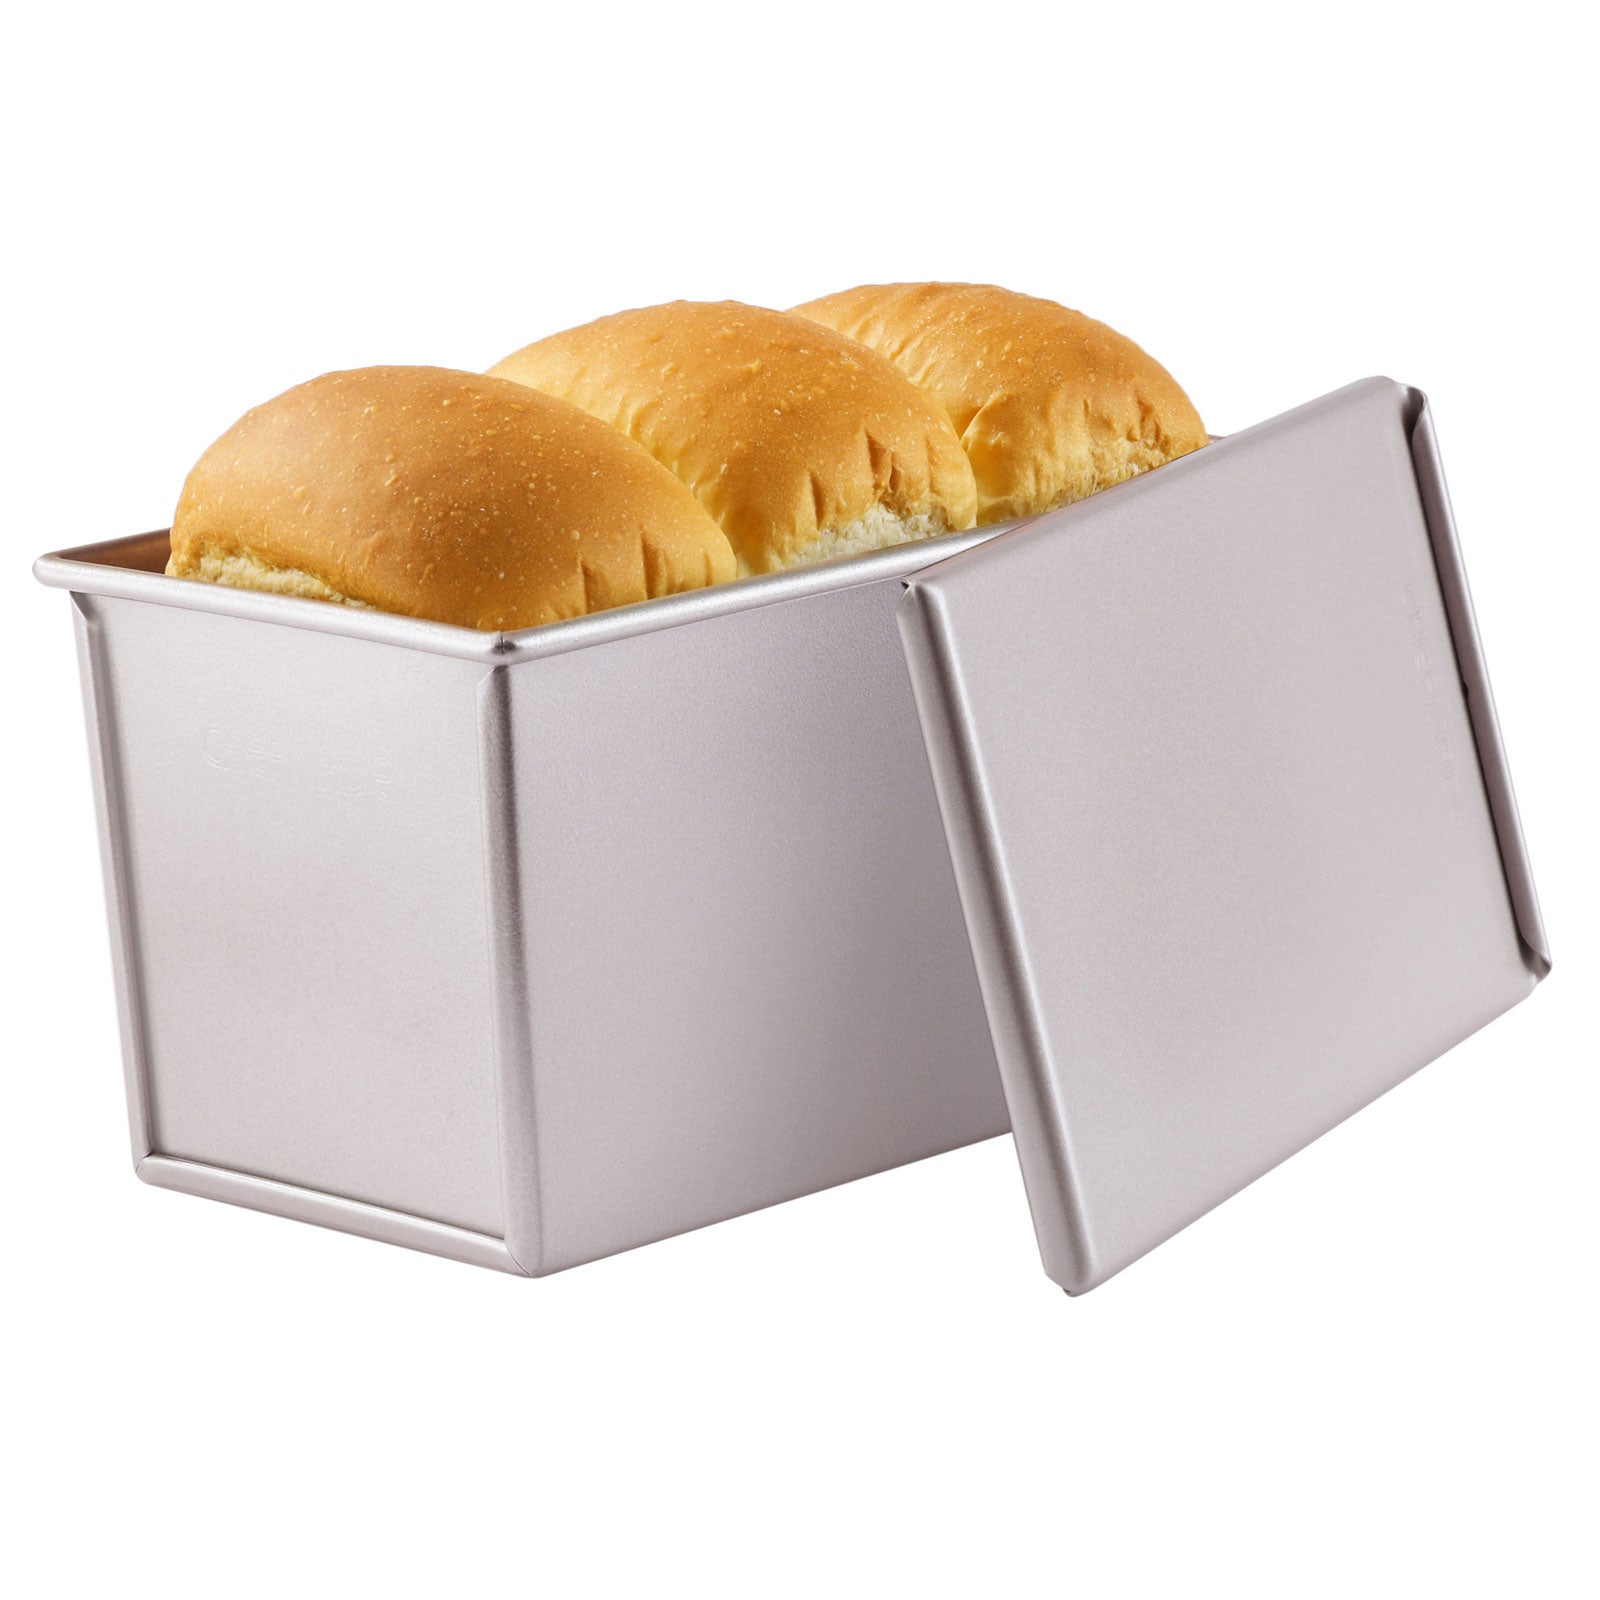 Chefmade學廚WK9088不沾450g 12兩滑蓋吐司盒4" x 7.5" Flat Toast Box (450G Dough Capacity)